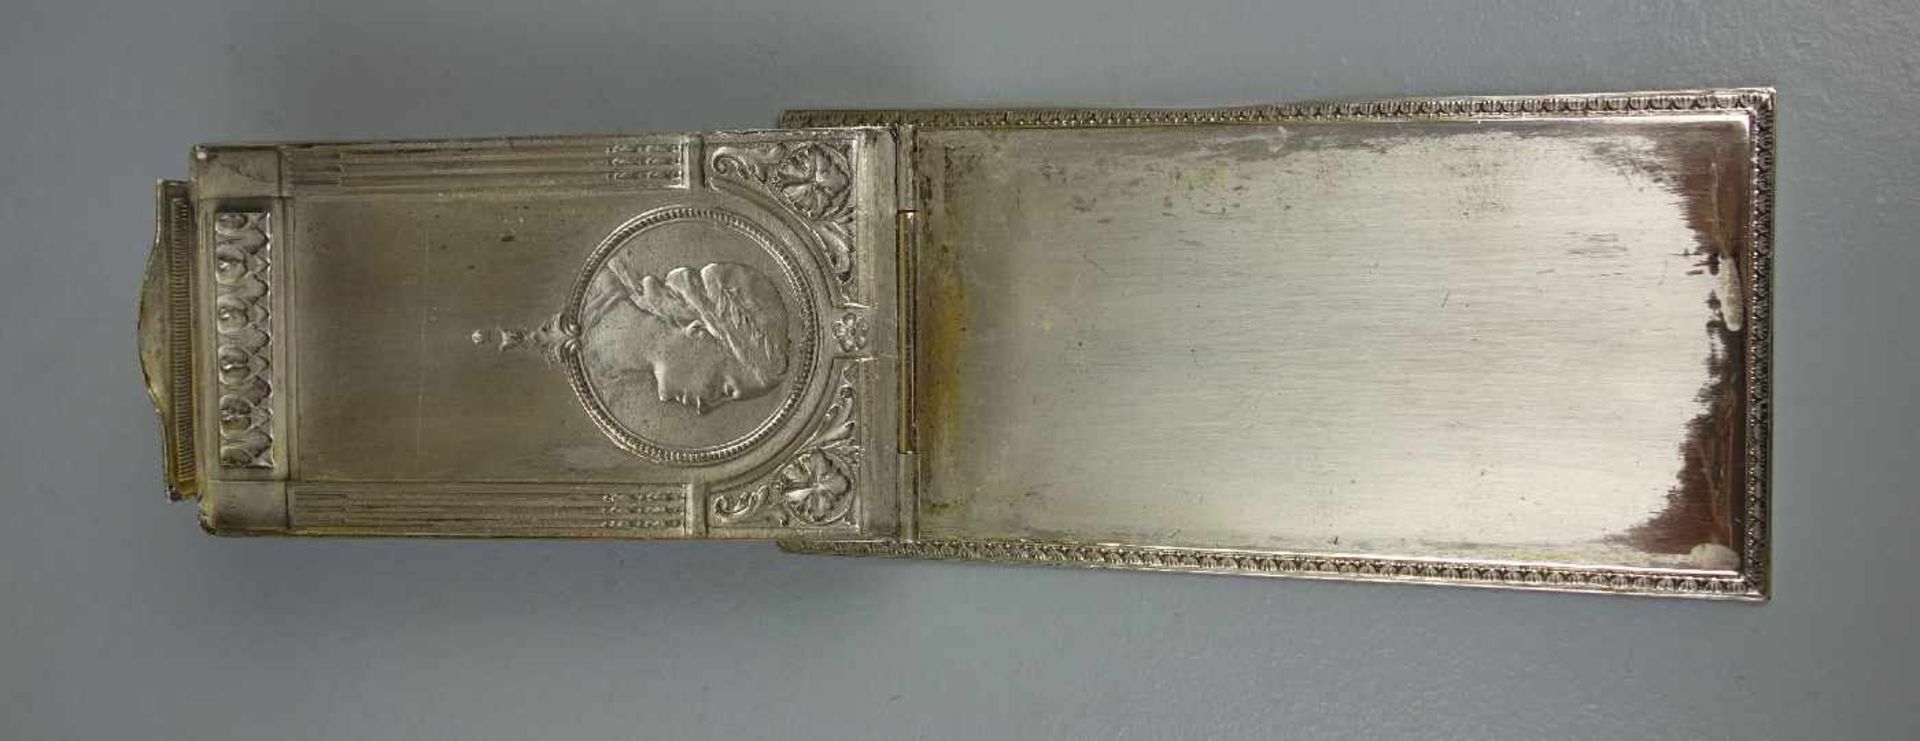 NOTIZBLOCK - HALTER / TANZKARTE / notepad holder, versilbertes Metall, um 1900. Rückseite - Bild 3 aus 5